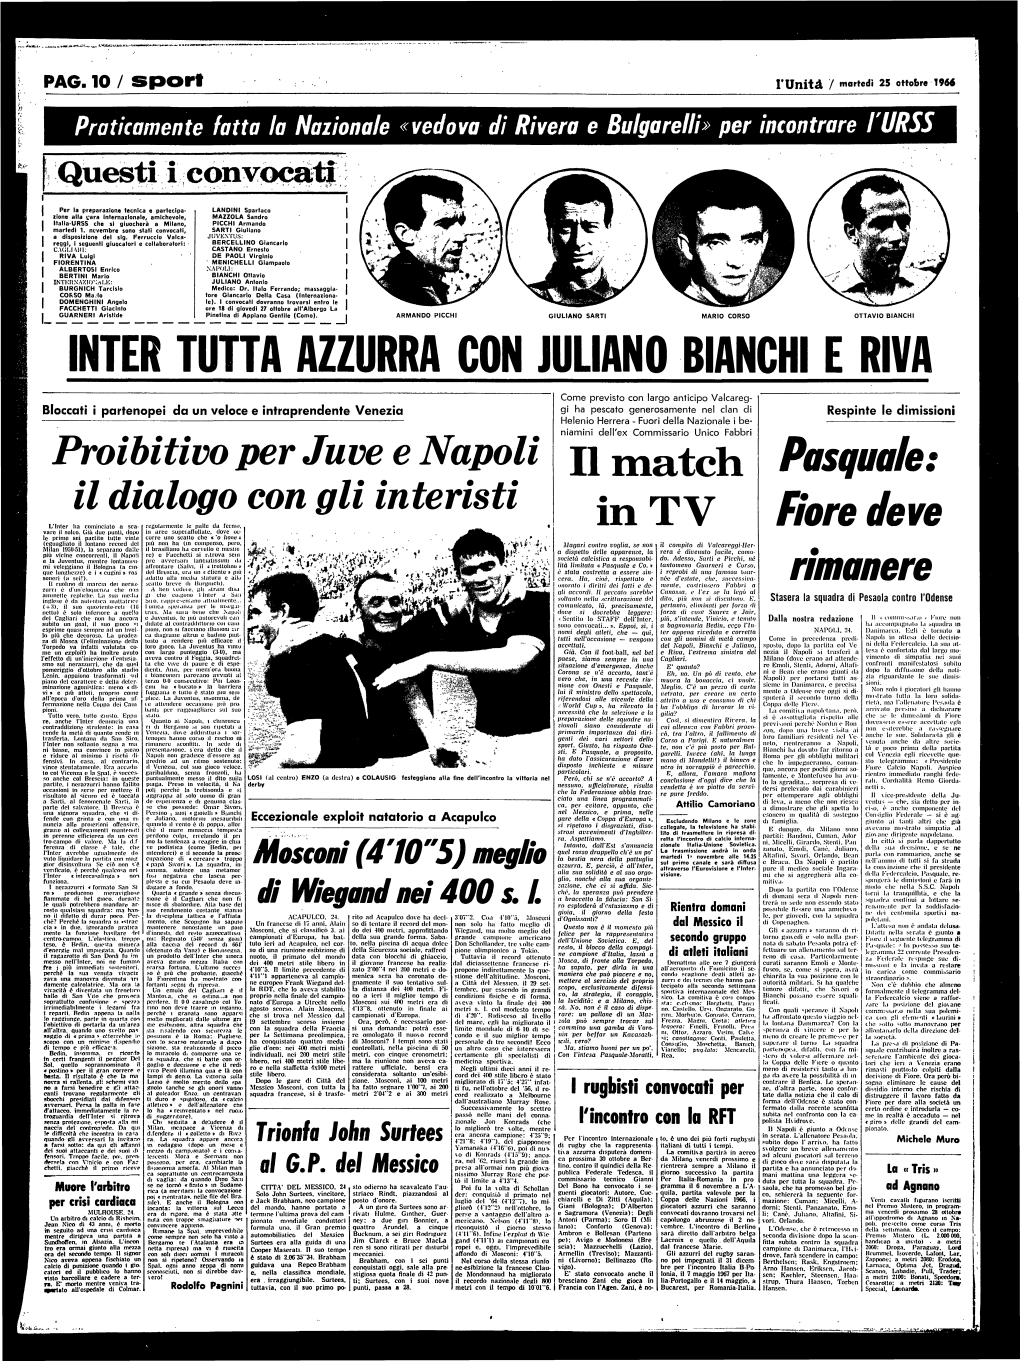 PAG. 10 / Sport I'unit a / Marredi 25 Ottobre 1966